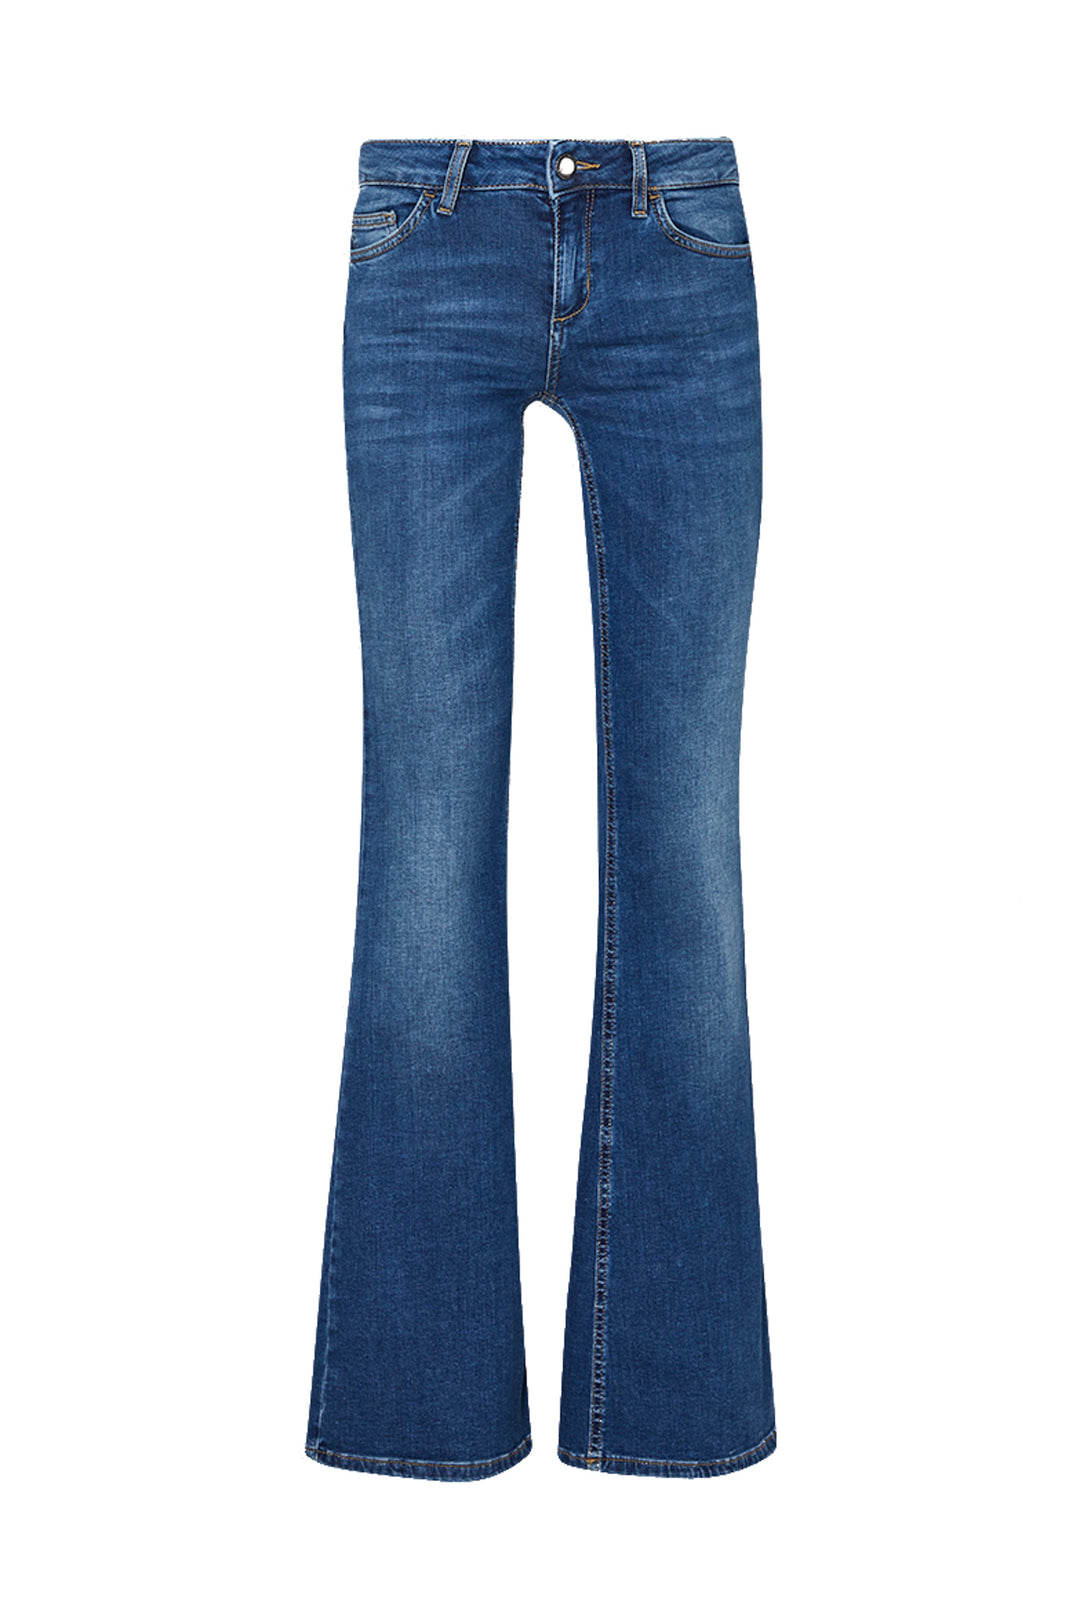 LIU JO Jeans flare ecosostenibile in denim scuro con elastico - Mancinelli 1954